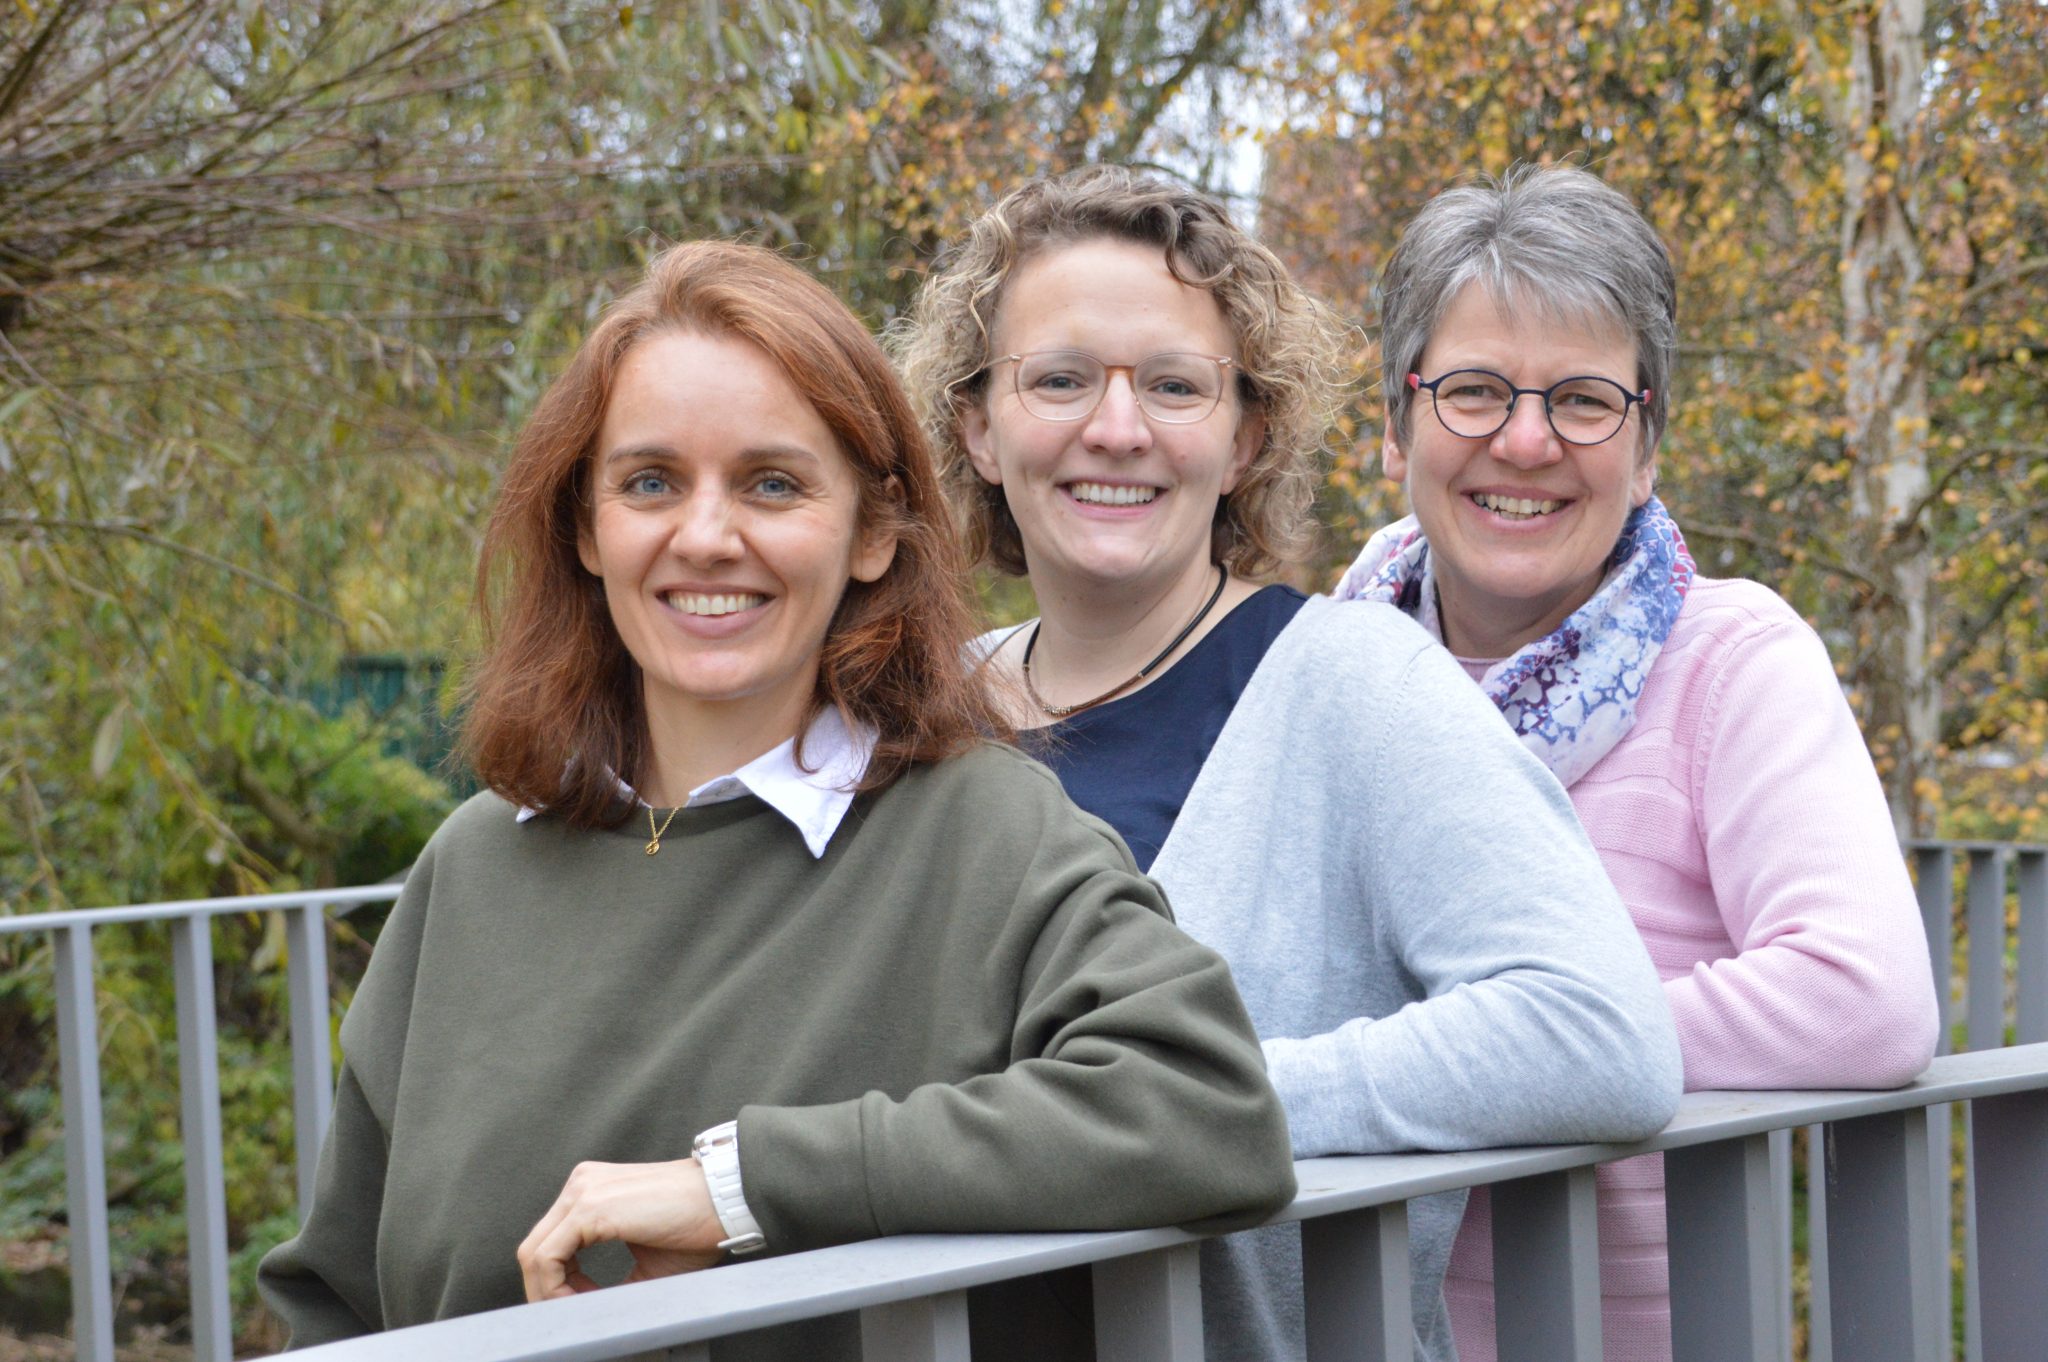 Andrea Ahlert, Anita Beuning und Klara Leiting organisieren die Kurse des Kolping Bildungswerk Saerbeck und sind Ansprechpartnerinnen für alle Fragen.